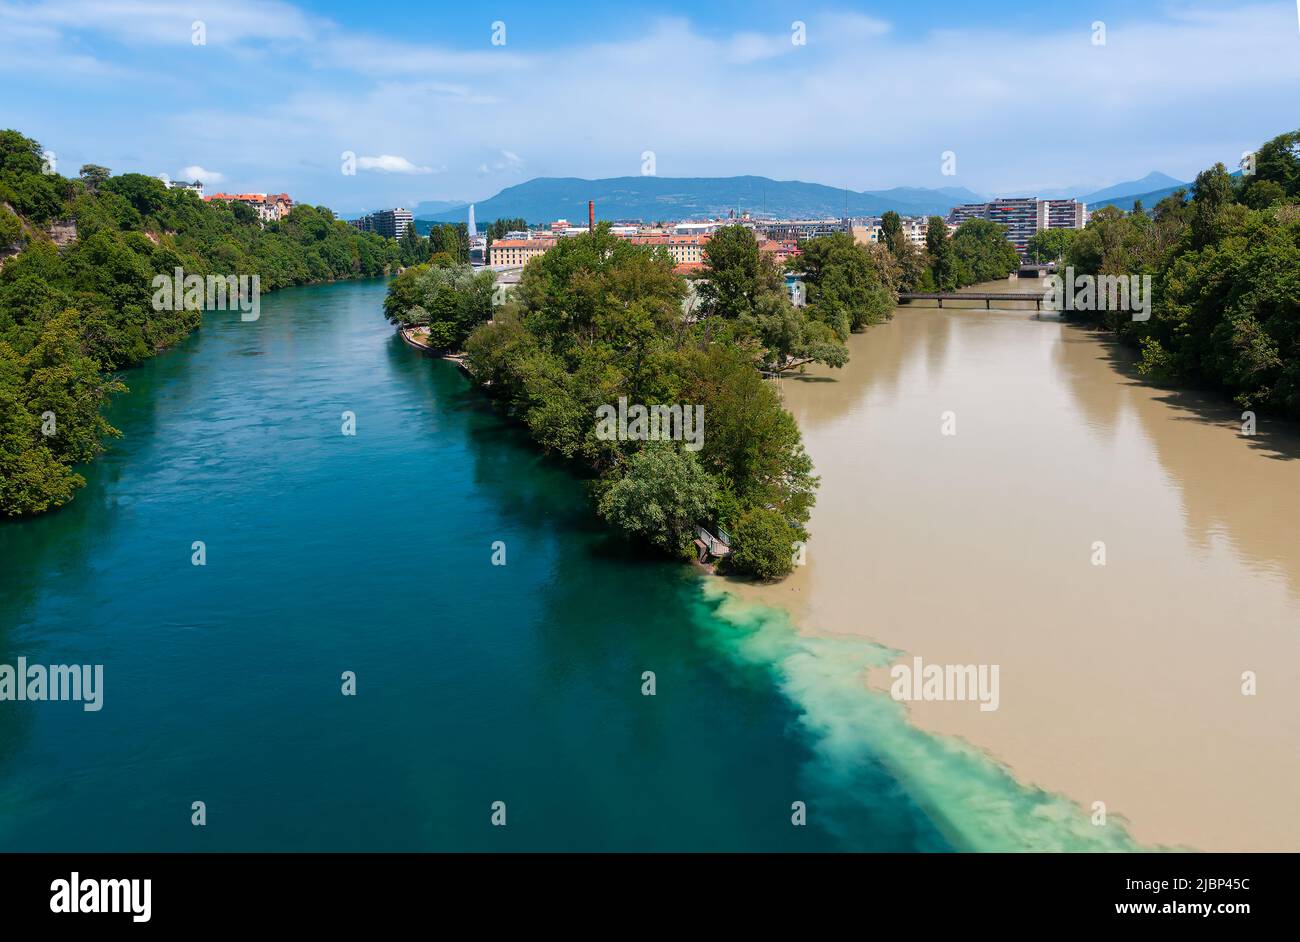 Das berühmte La Jonction, der Zusammenfluss der Flüsse Rhone auf der linken Seite und Arve auf der rechten Seite in Genf, Schweiz. Stockfoto